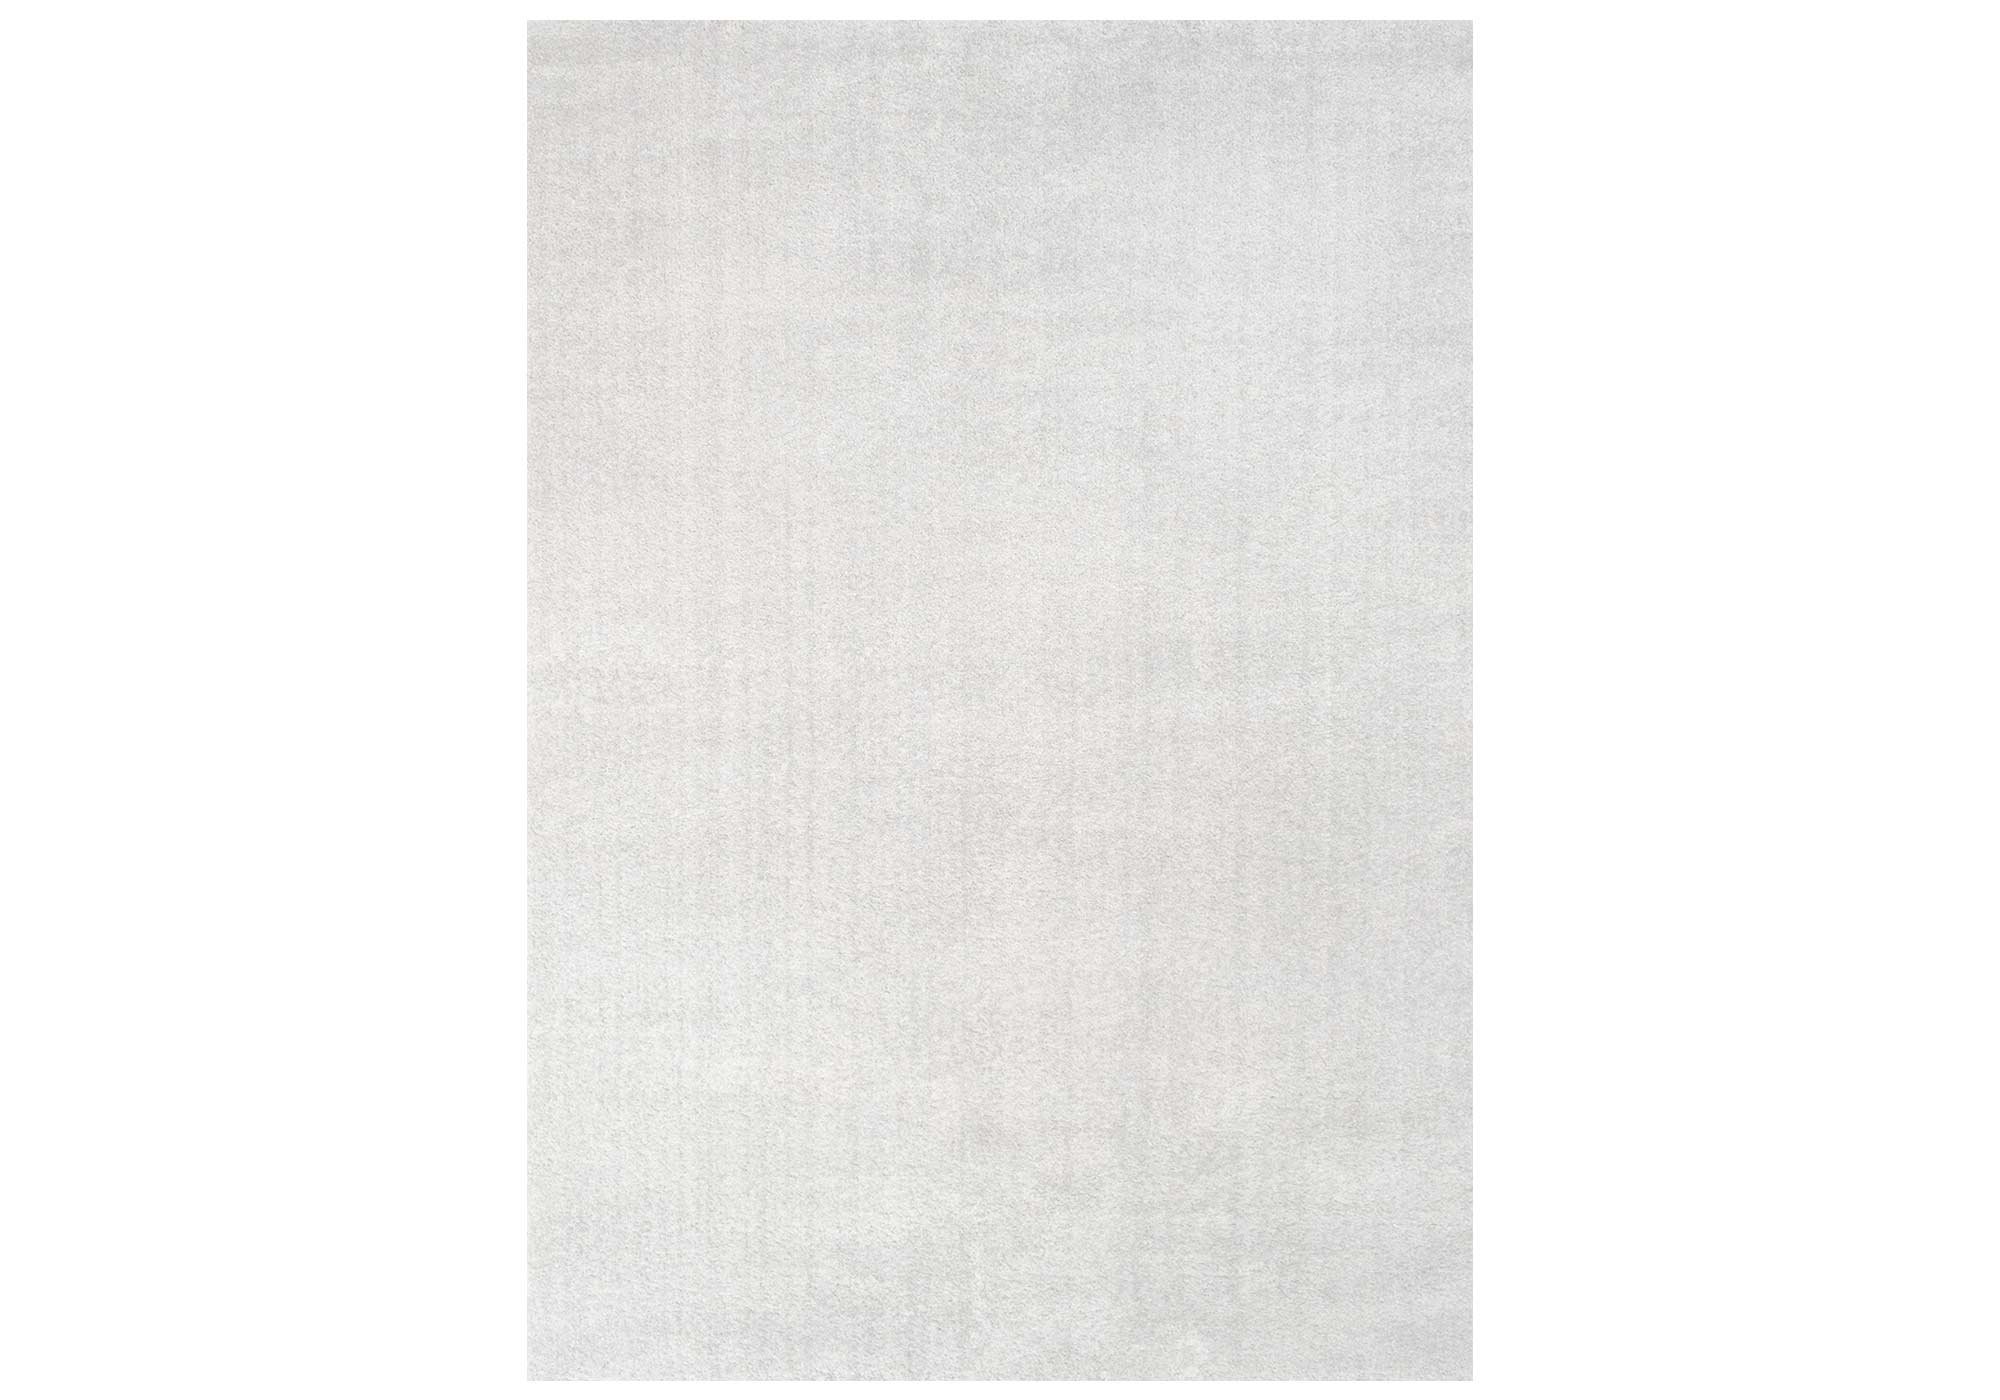 Festival Hochflor-Teppich 240 x 340 cm - weiß - 30 mm Höhe - weich - Delgardo 501